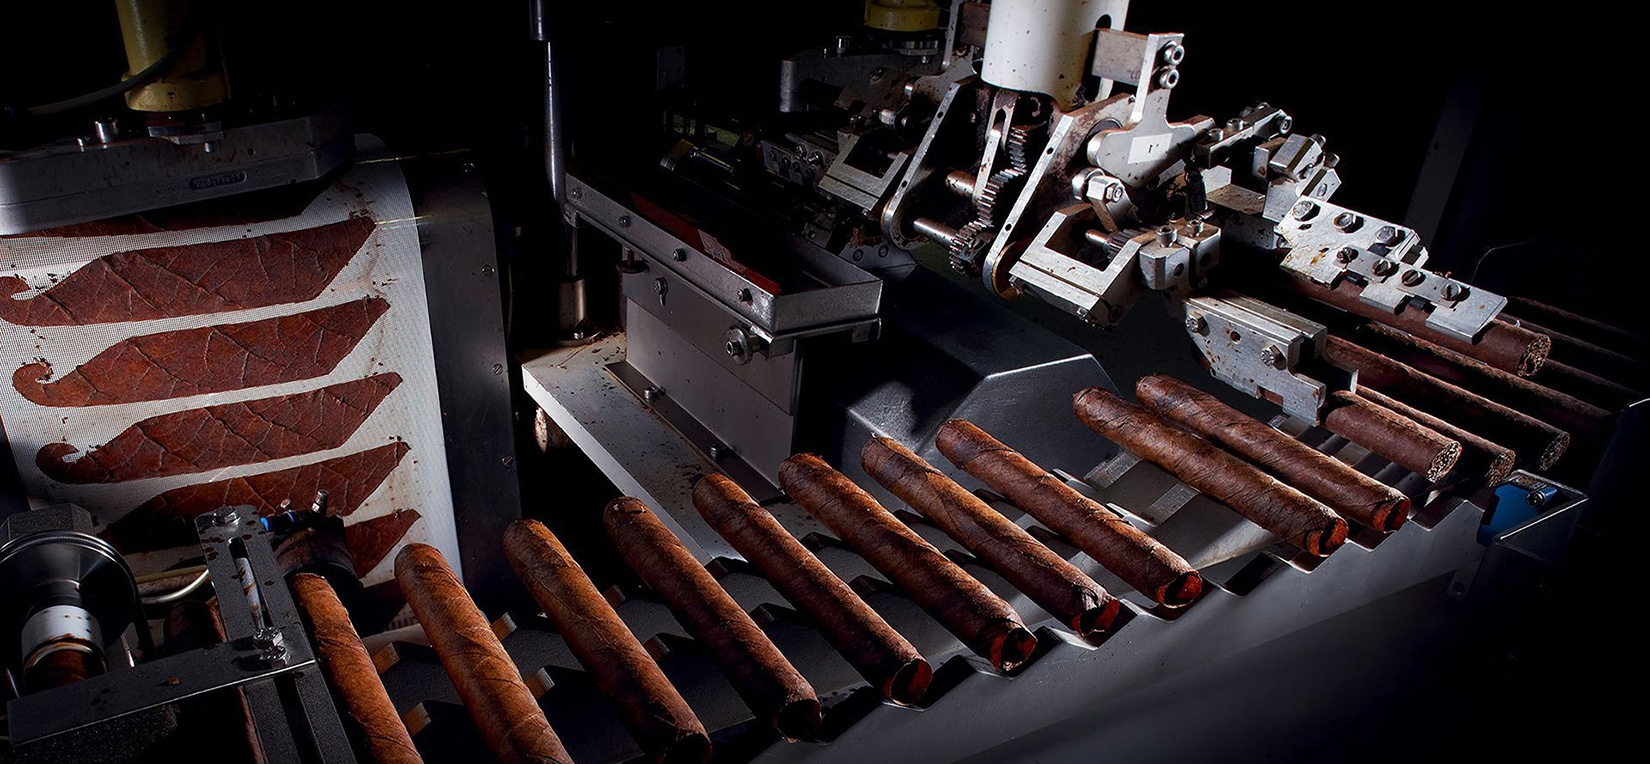 Machine-made cigars